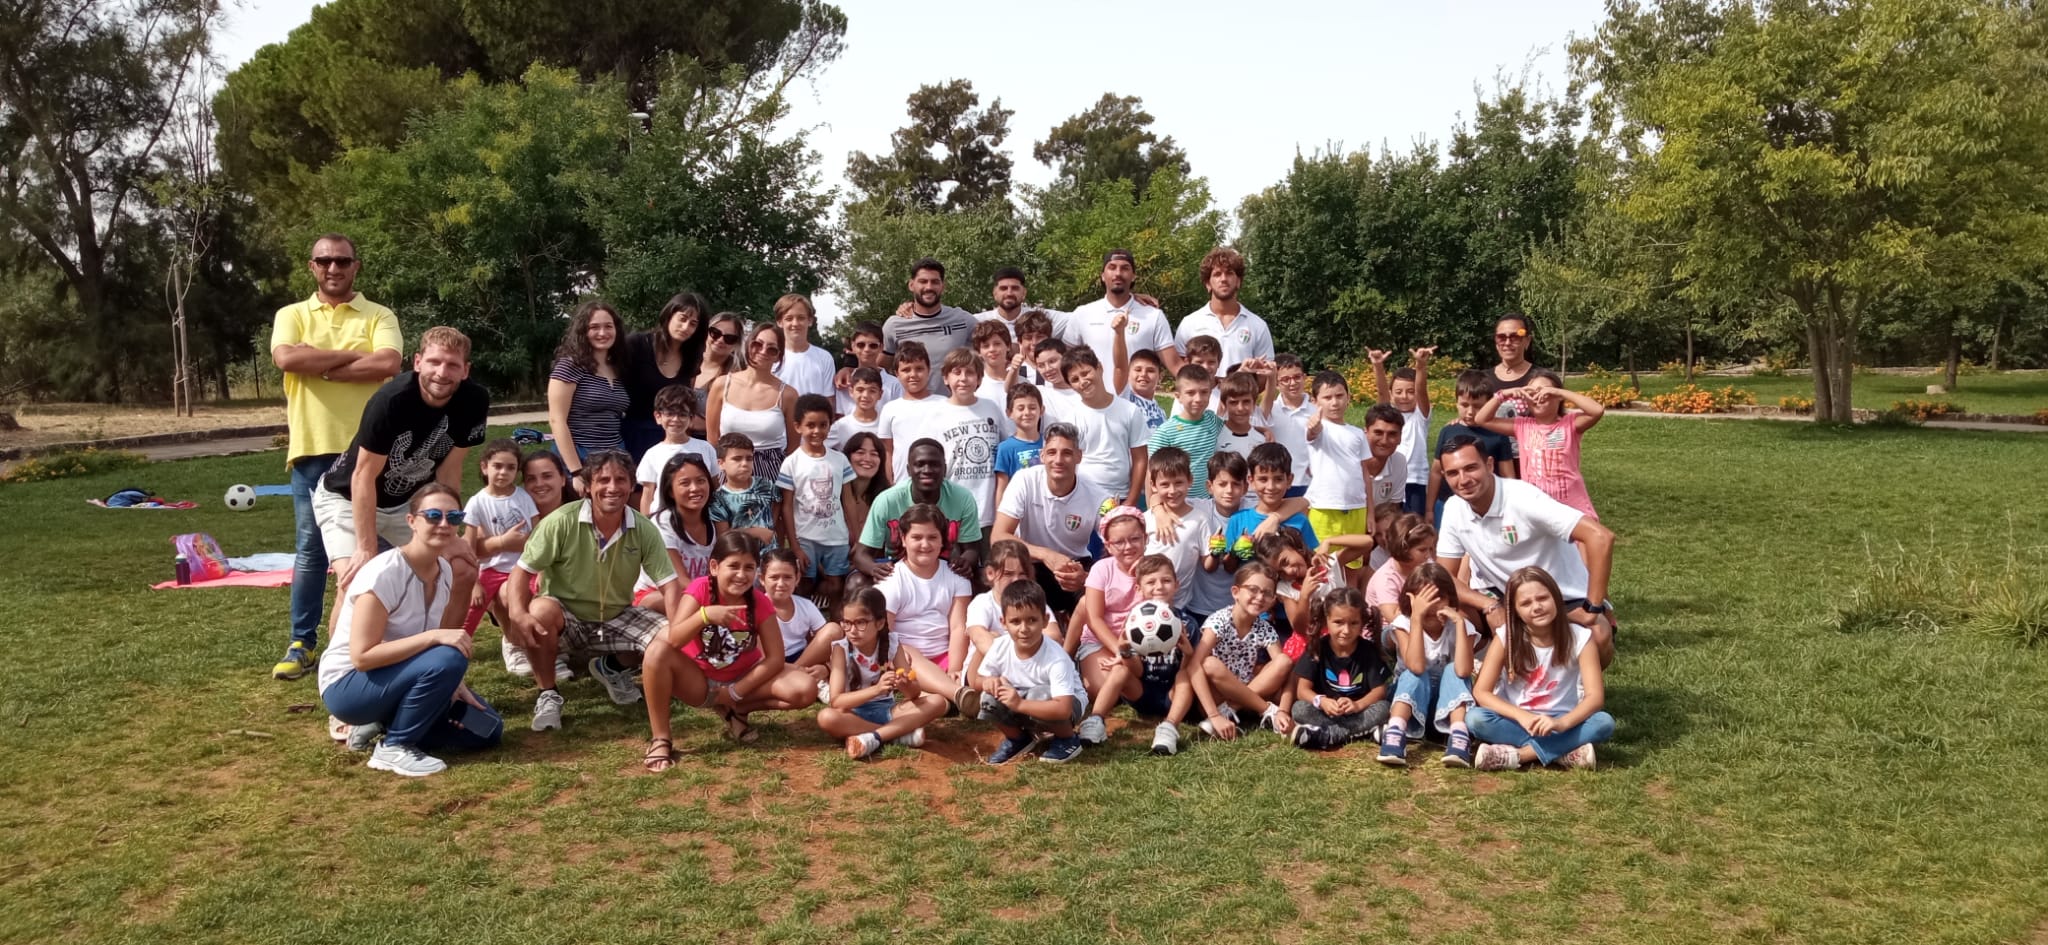 Caltanissetta. I bambini del “The Gruffalo’s camp 2022” hanno incontrato i giocatori della Nissa